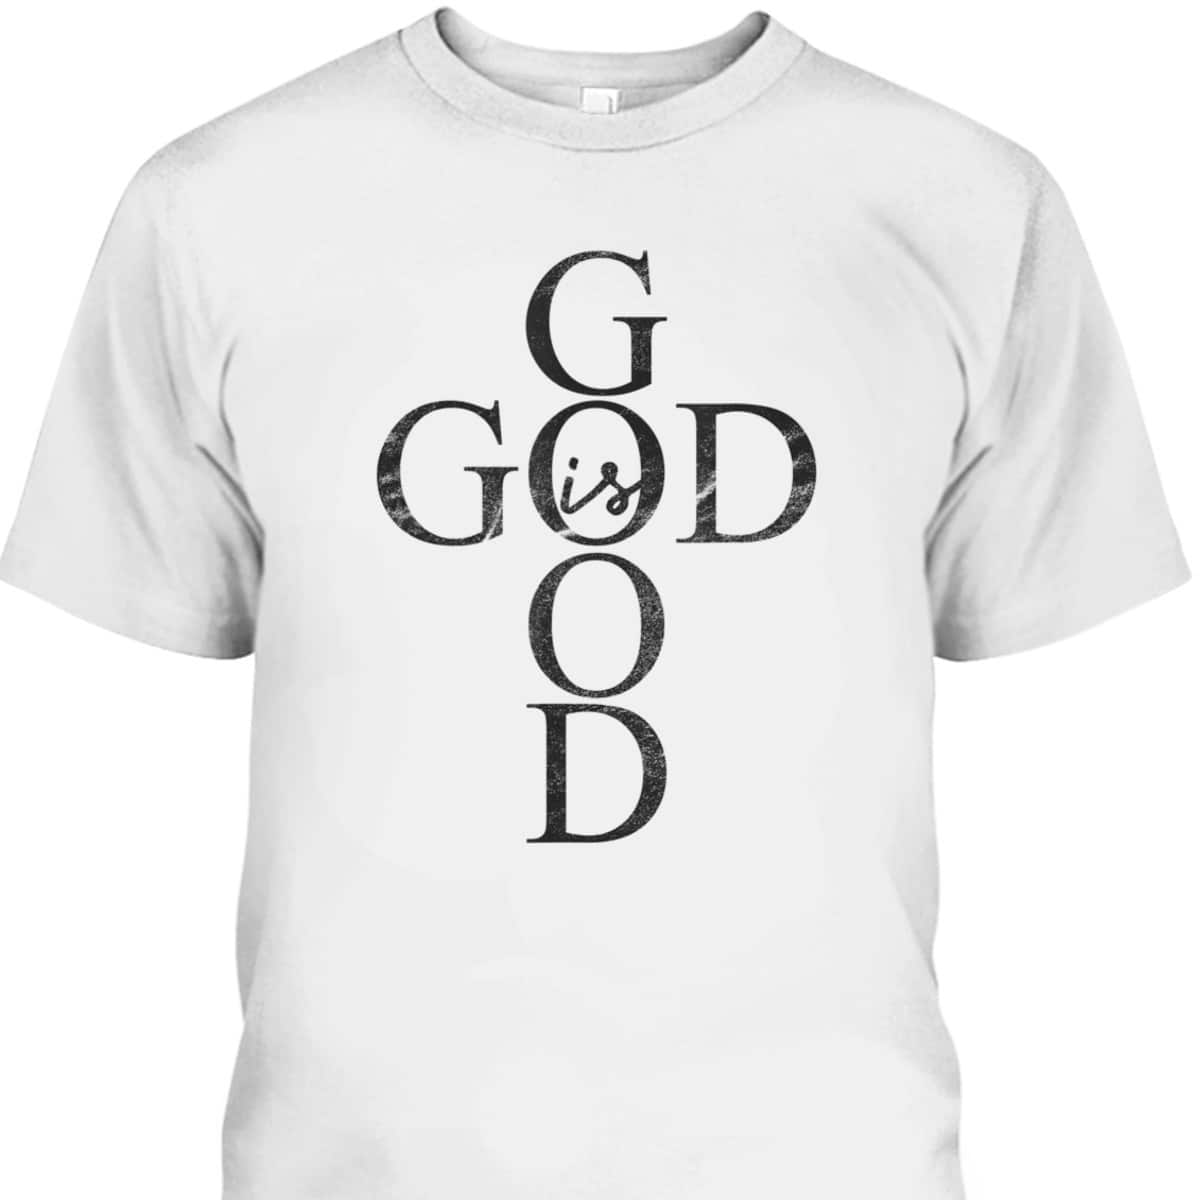 God Is Good Cross Dark Christian Religious T-Shirt